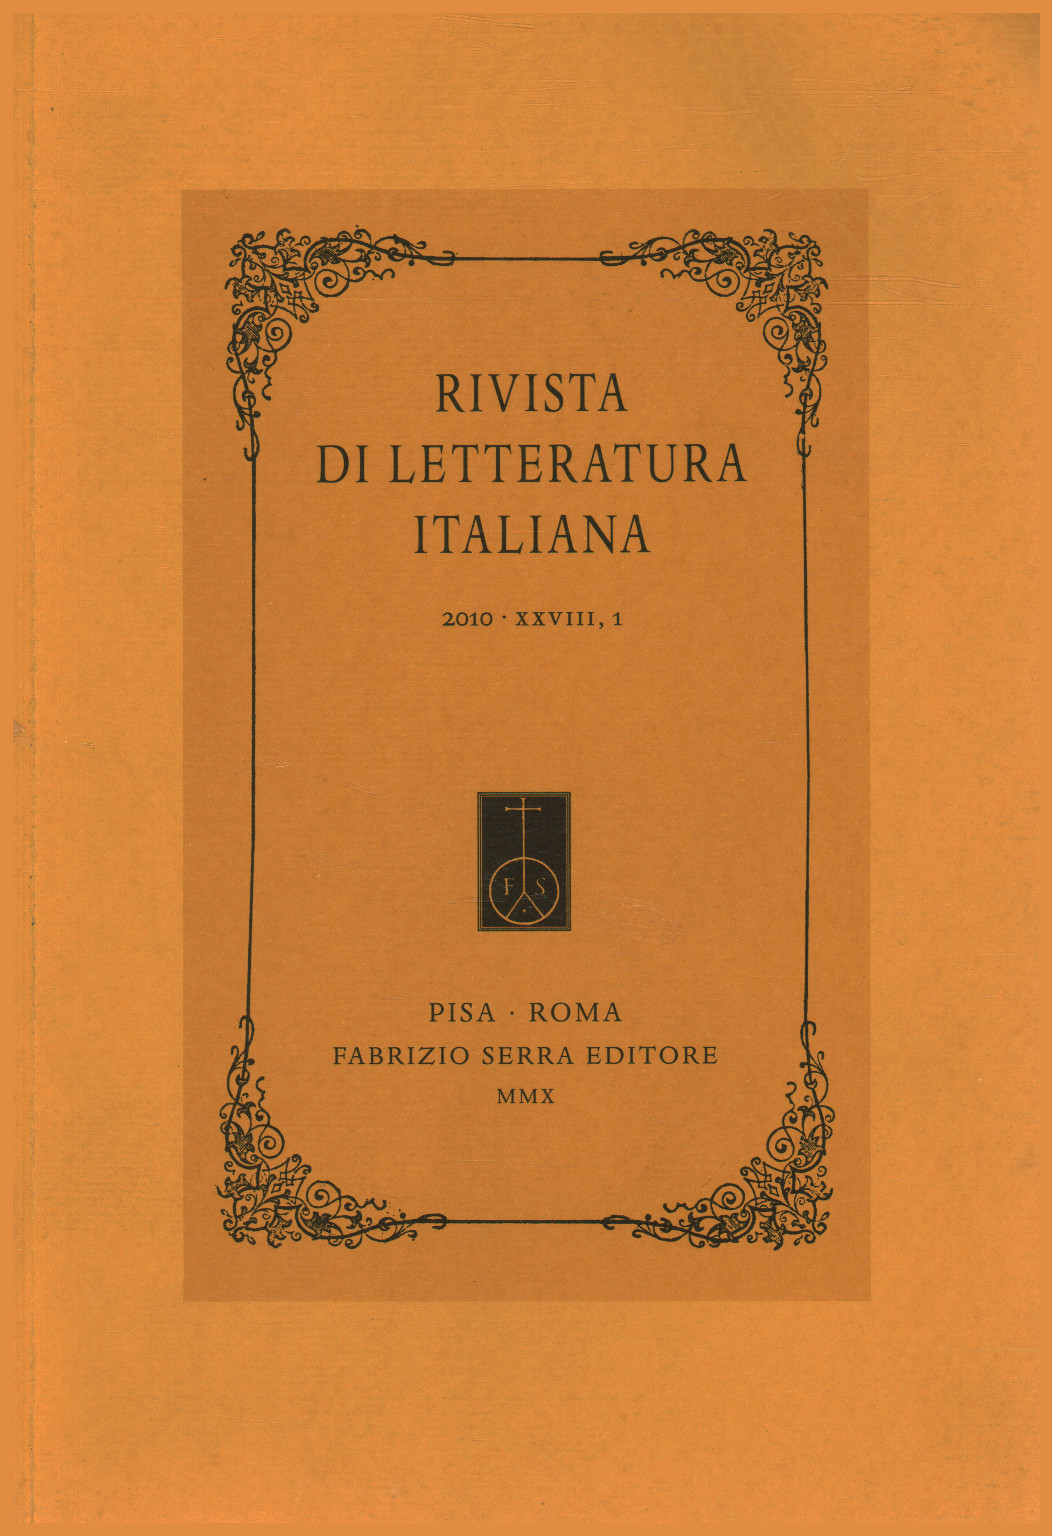 Zeitschrift für italienische literatur 2010,XXVIII,1, s.zu.